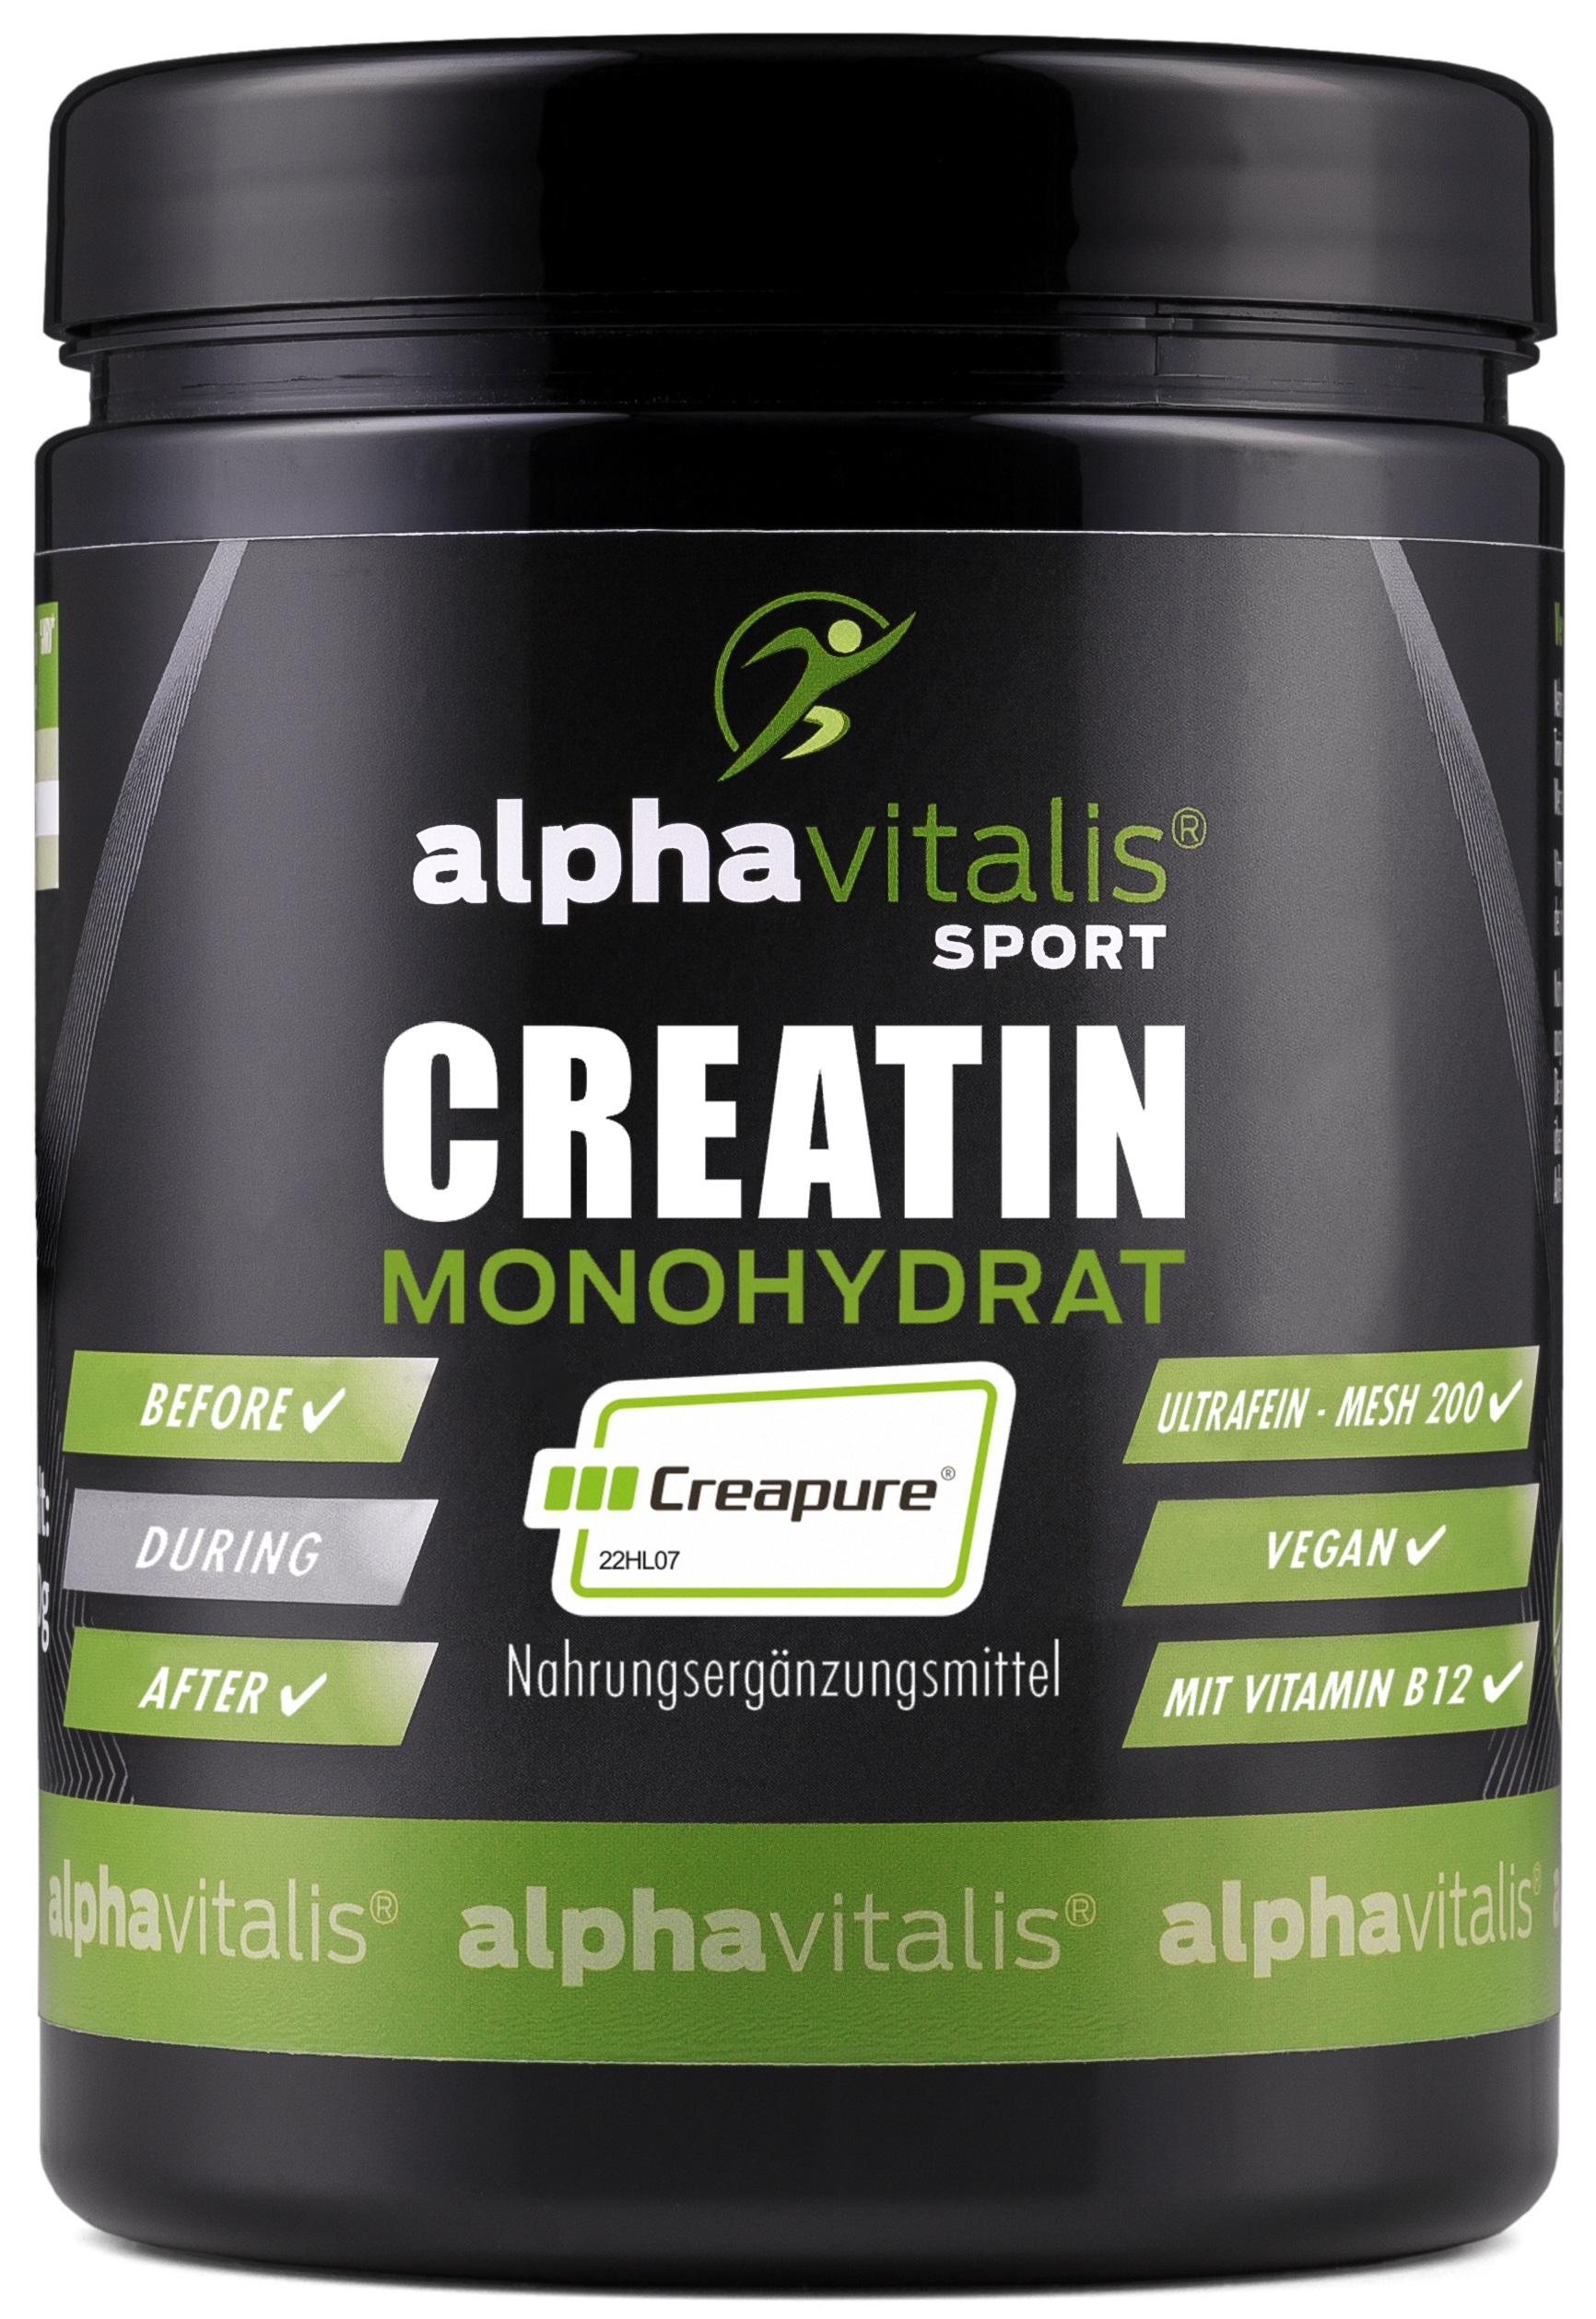 Alphavitalis Creatin Monohydrat Creapure® | ultrafeine Mesh 200 Qualität